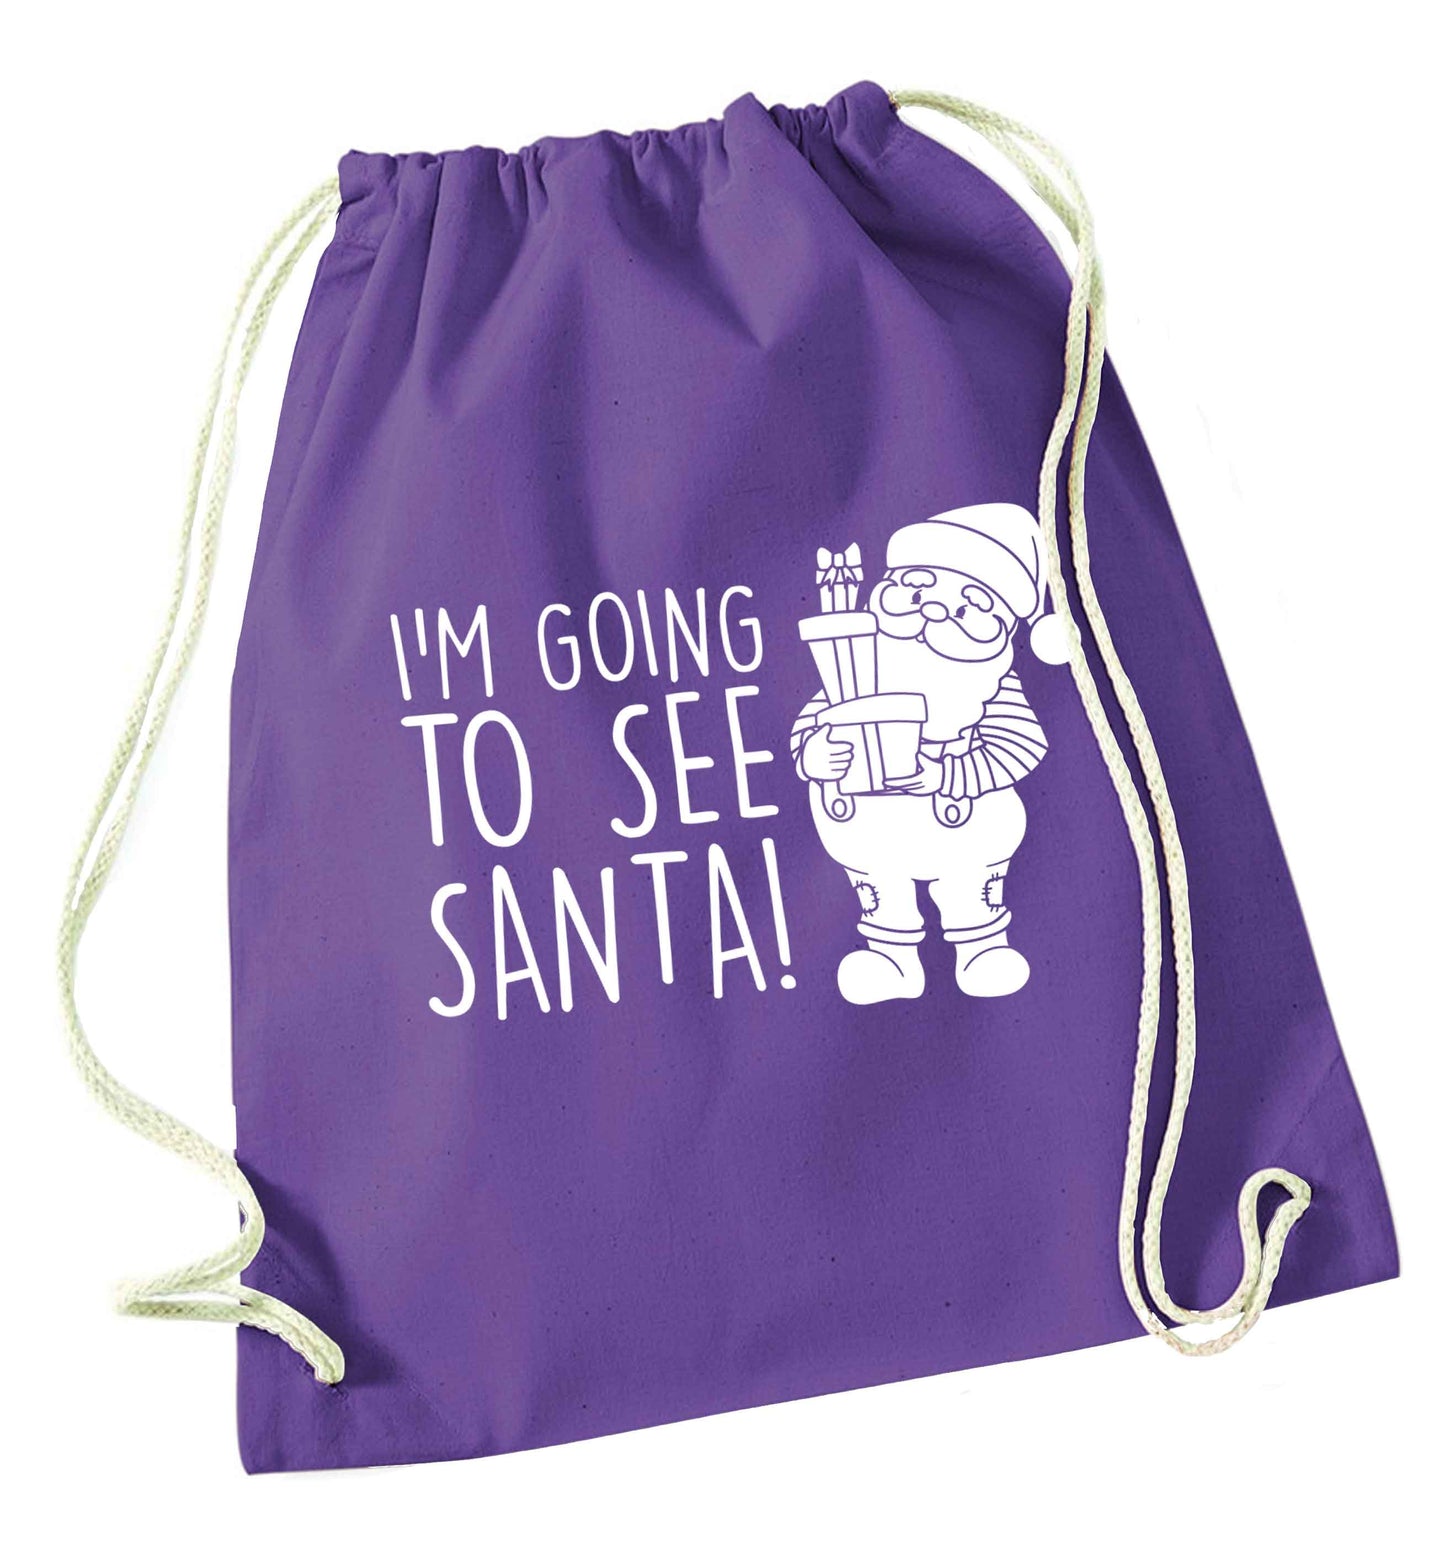 Merry Christmas purple drawstring bag